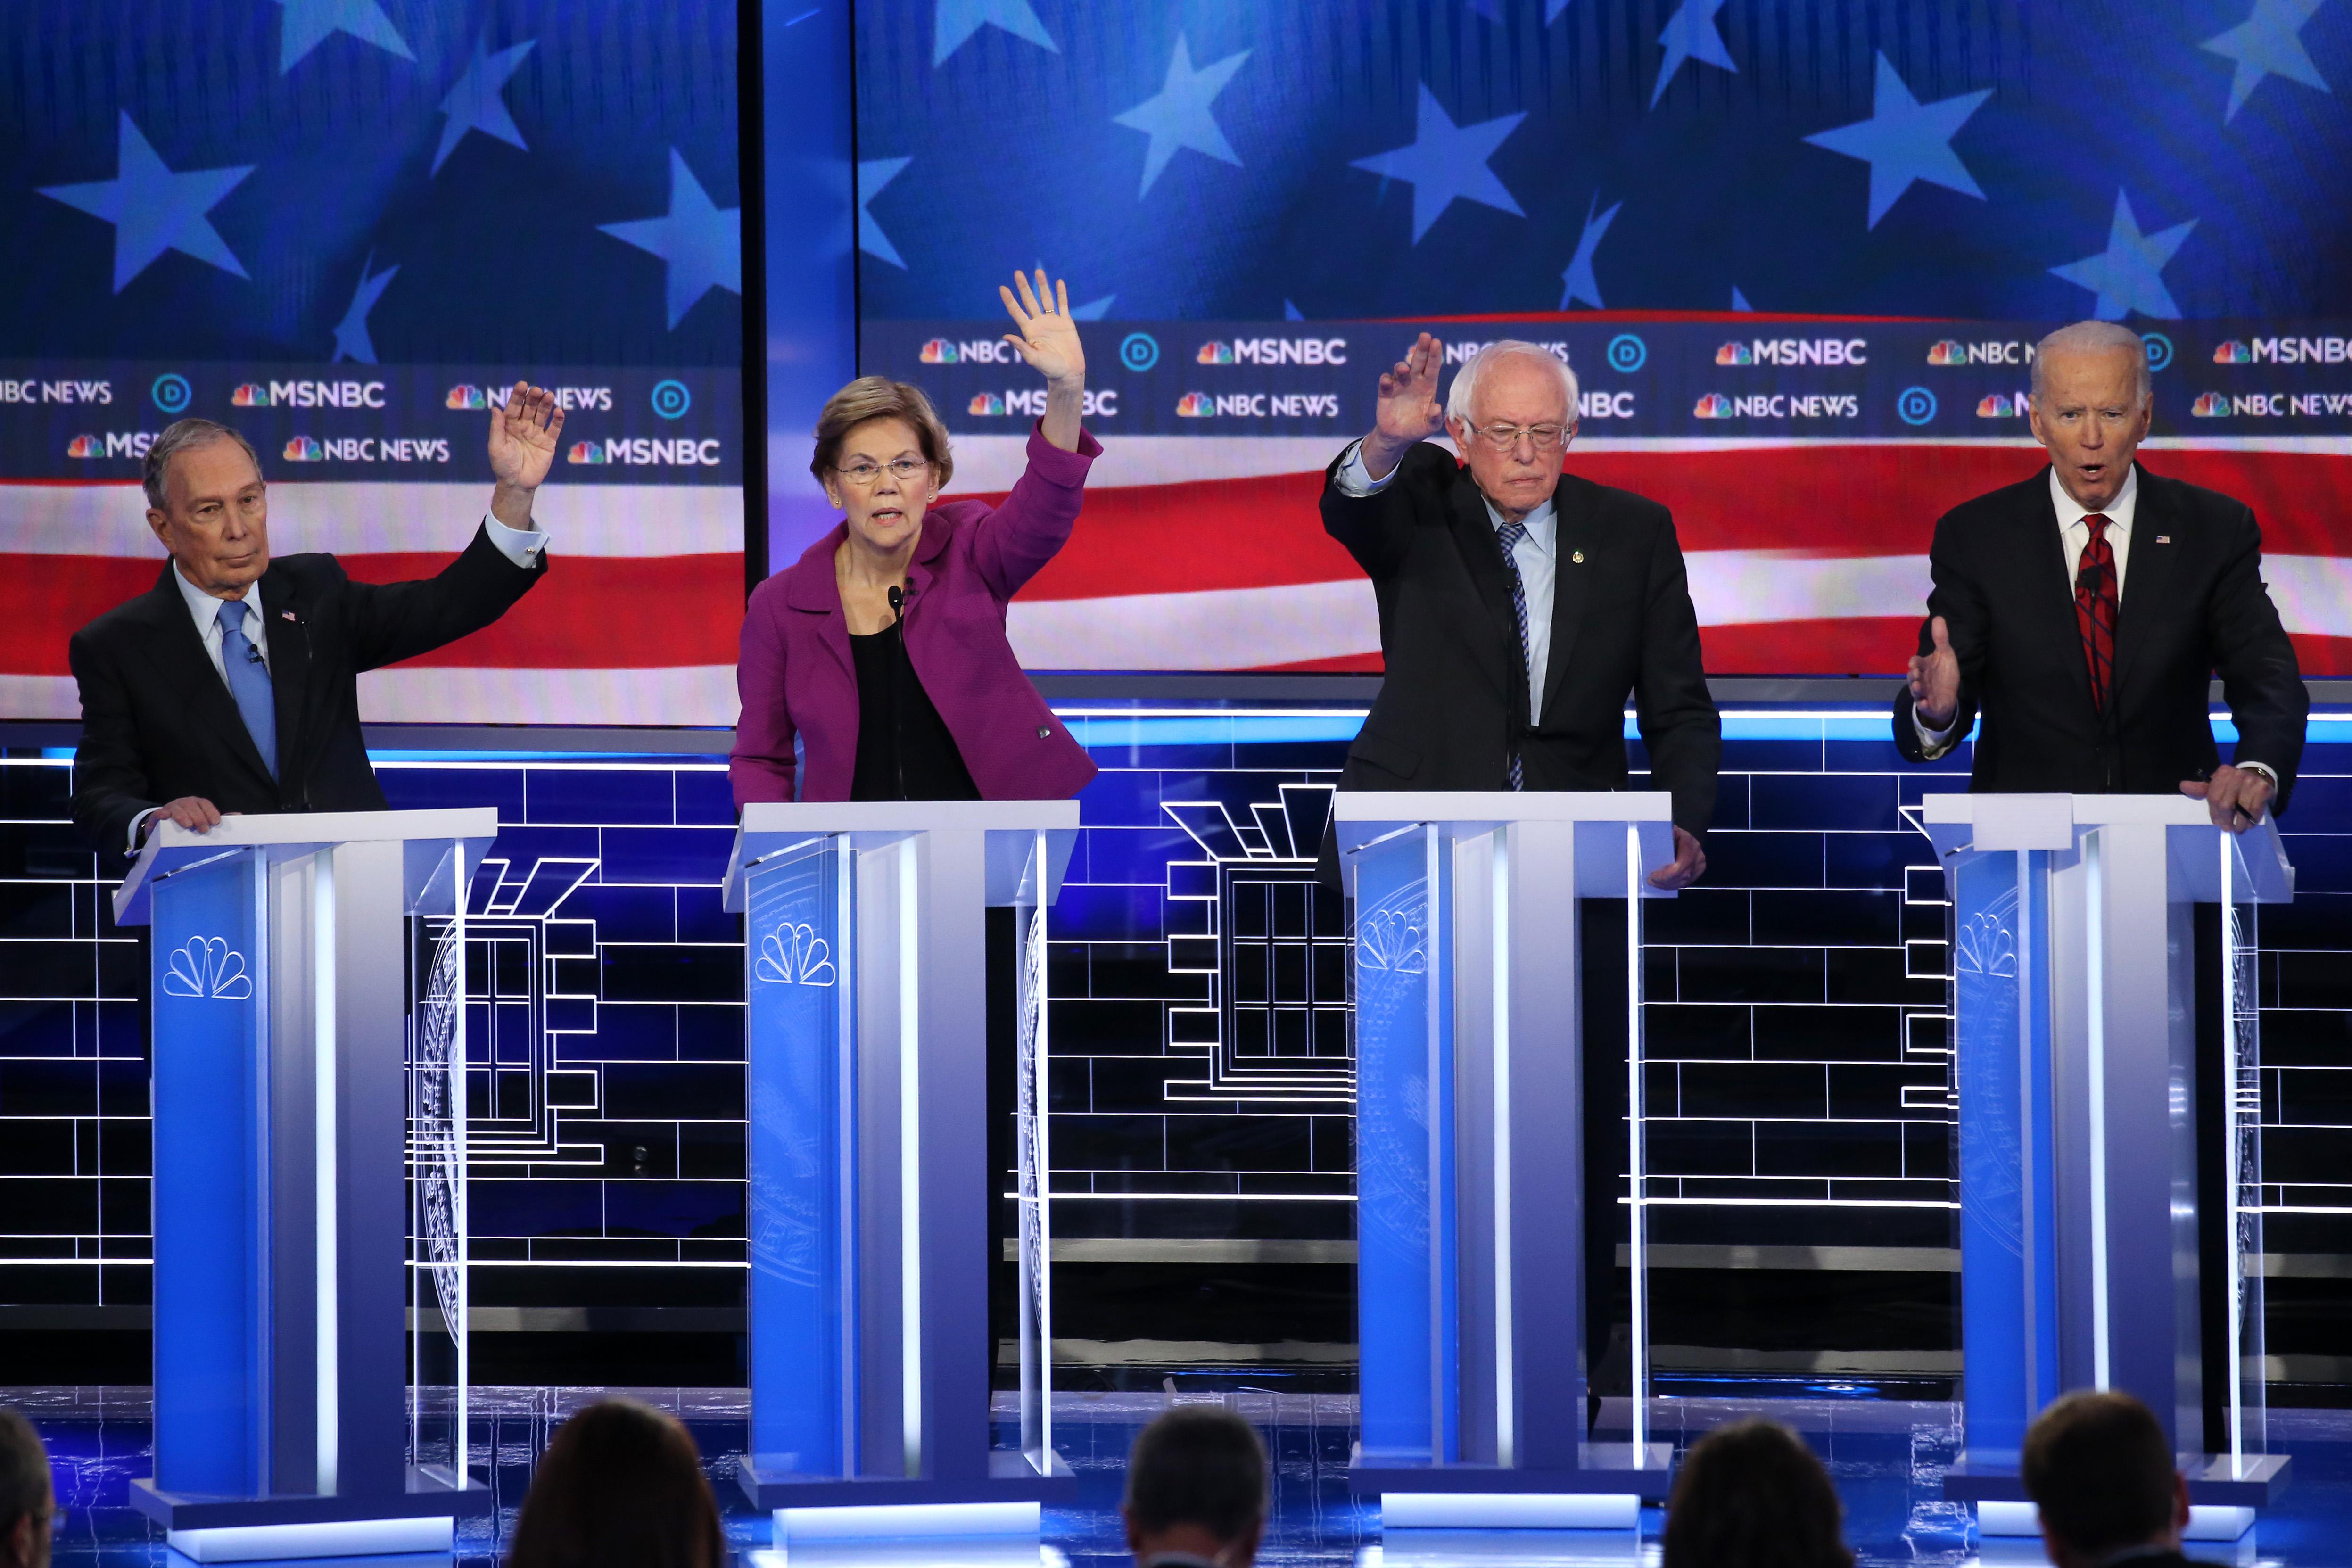 Michael Bloomberg, Elizabeth Warren, and Bernie Sanders raise their hands on the debate stage as Joe Biden speaks.